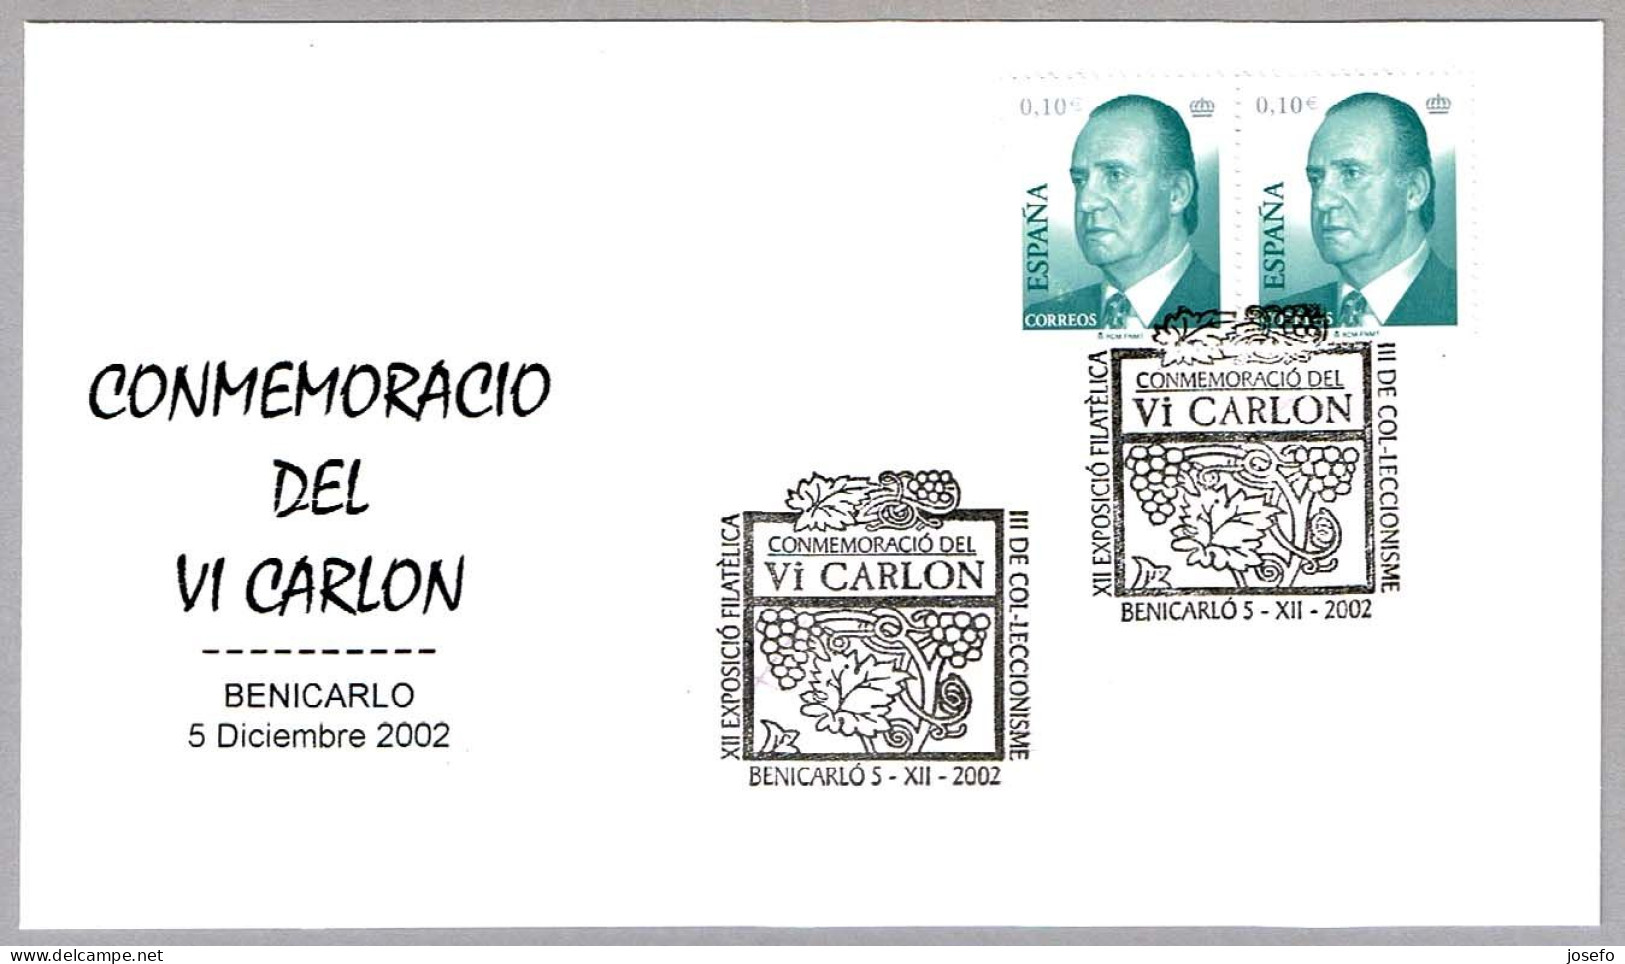 Conmemoration Del VINO VI CARLON - Wine VI CARLON. Benicarlo, Castellon, 2002 - Wines & Alcohols